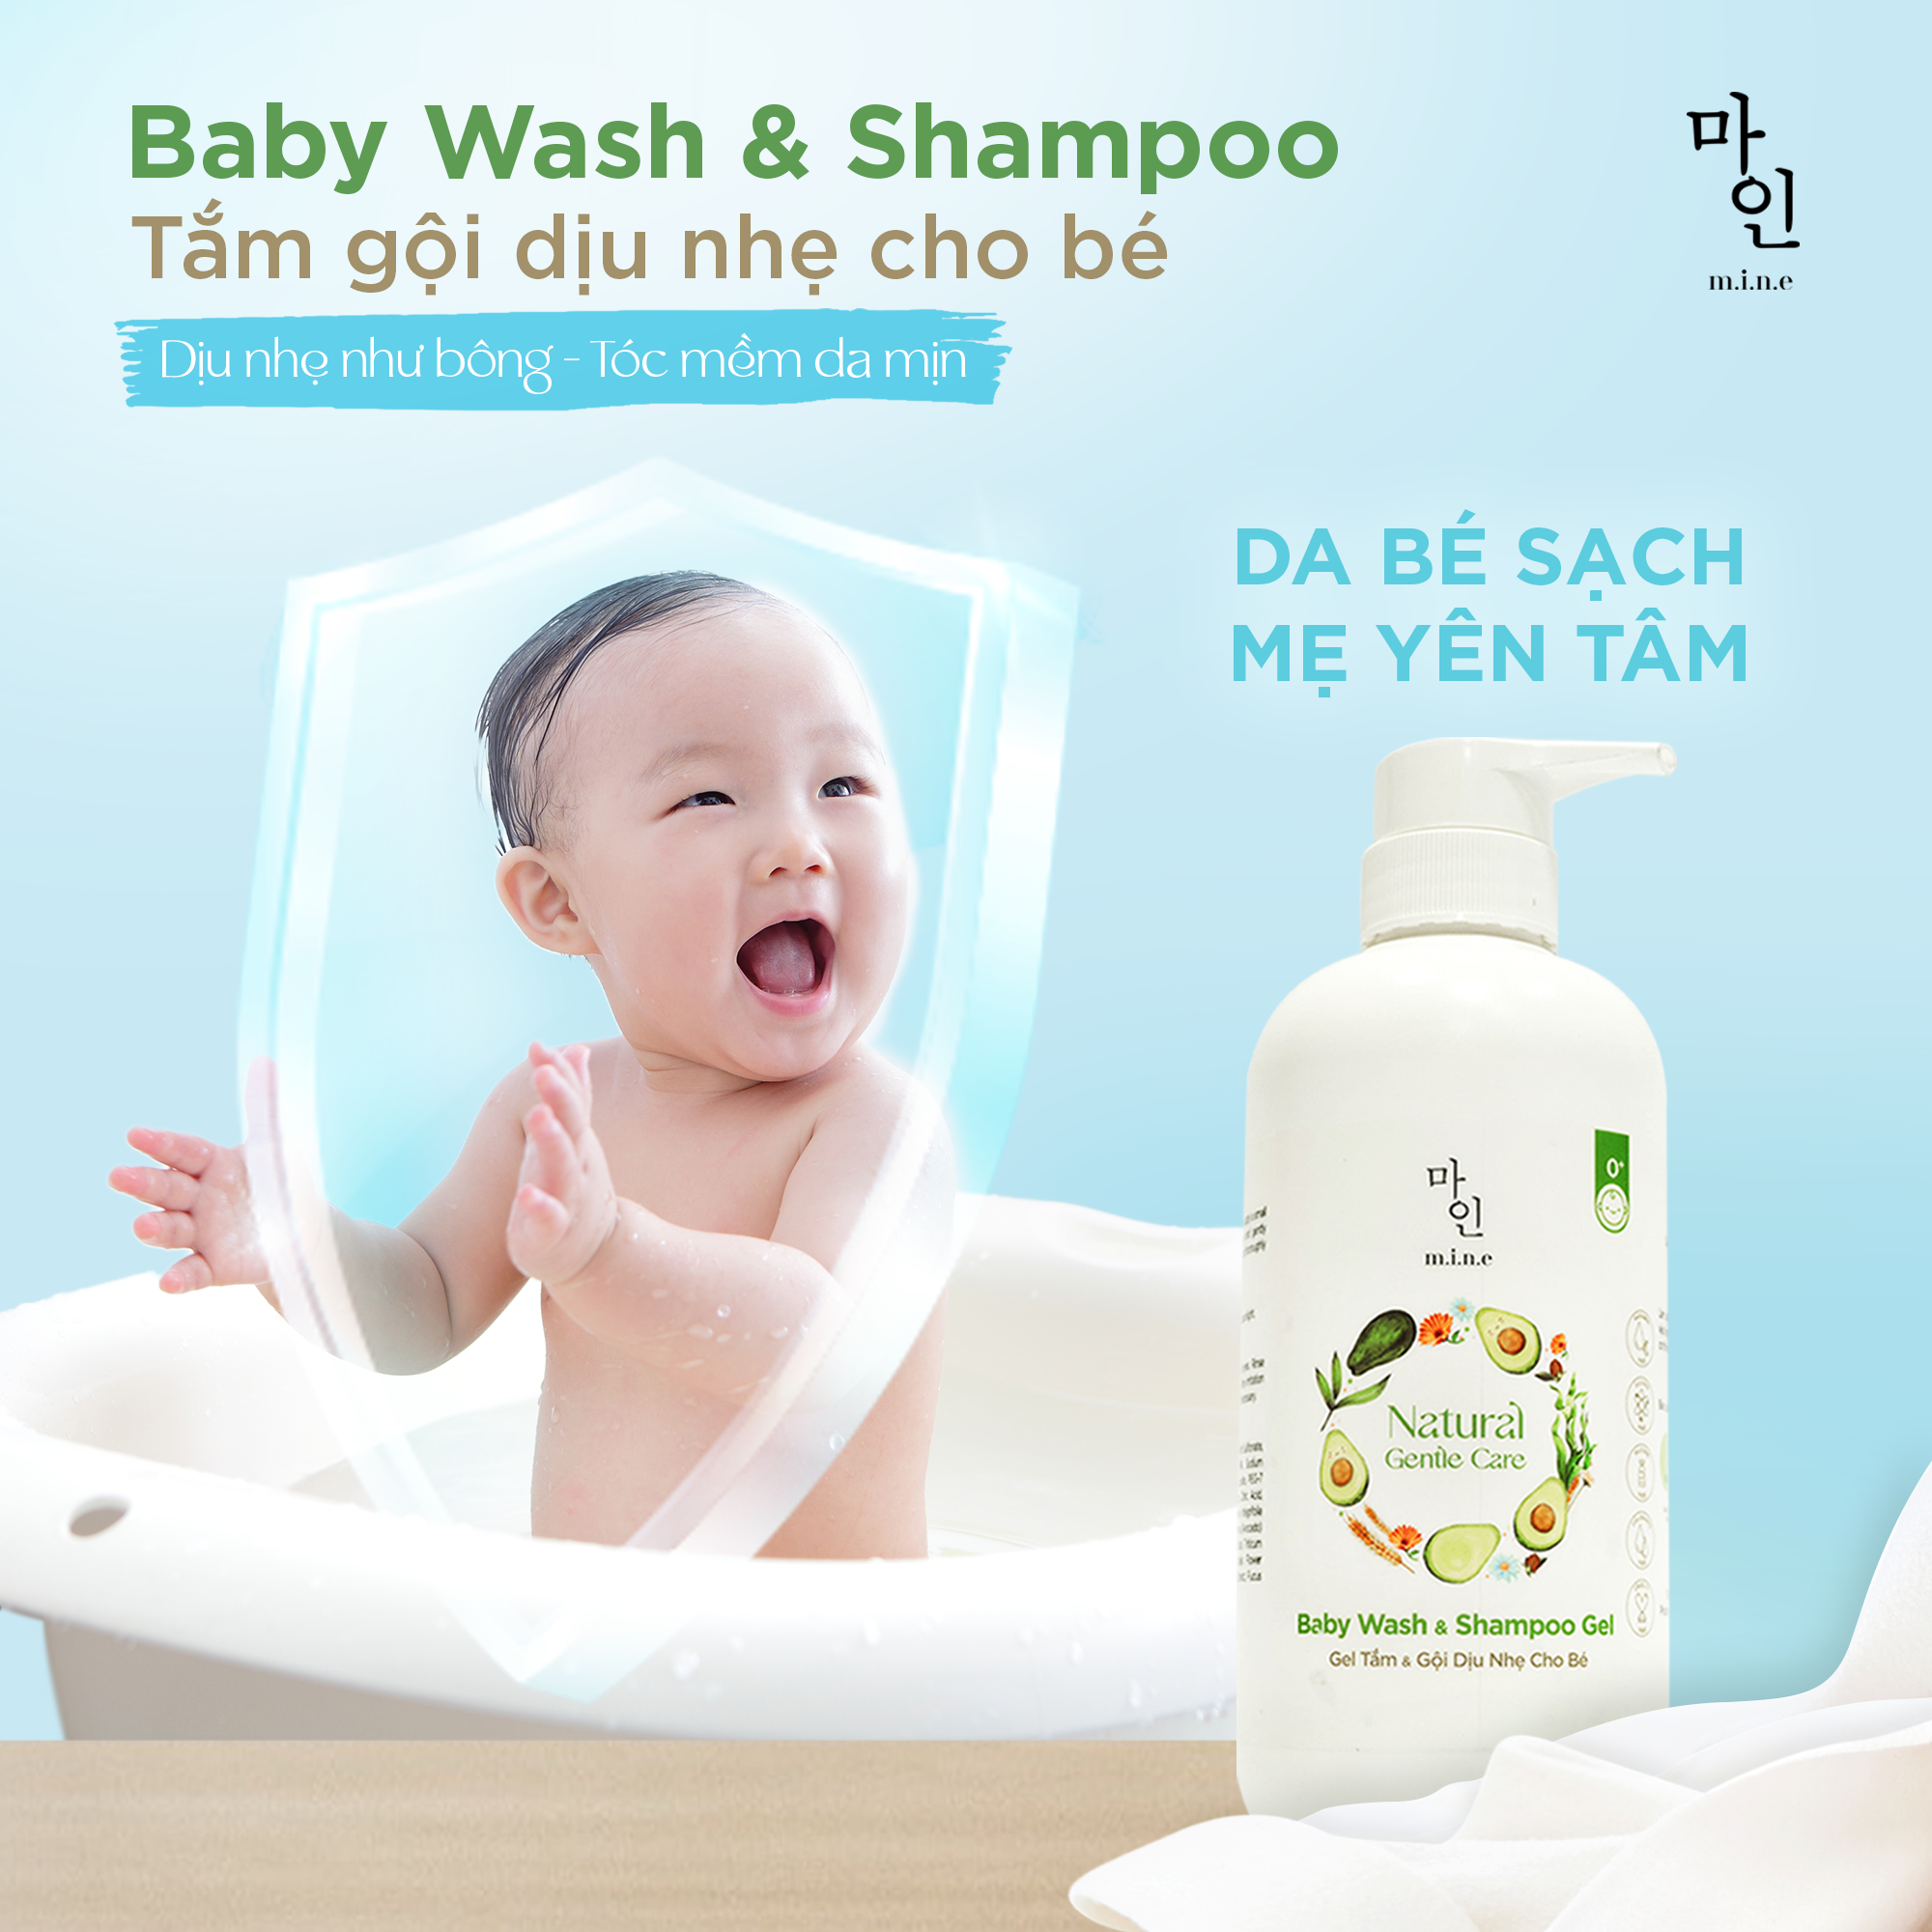 Gel tắm và gội dịu nhẹ cho bé MINE - Baby Wash Shampoo & Gel 500ml